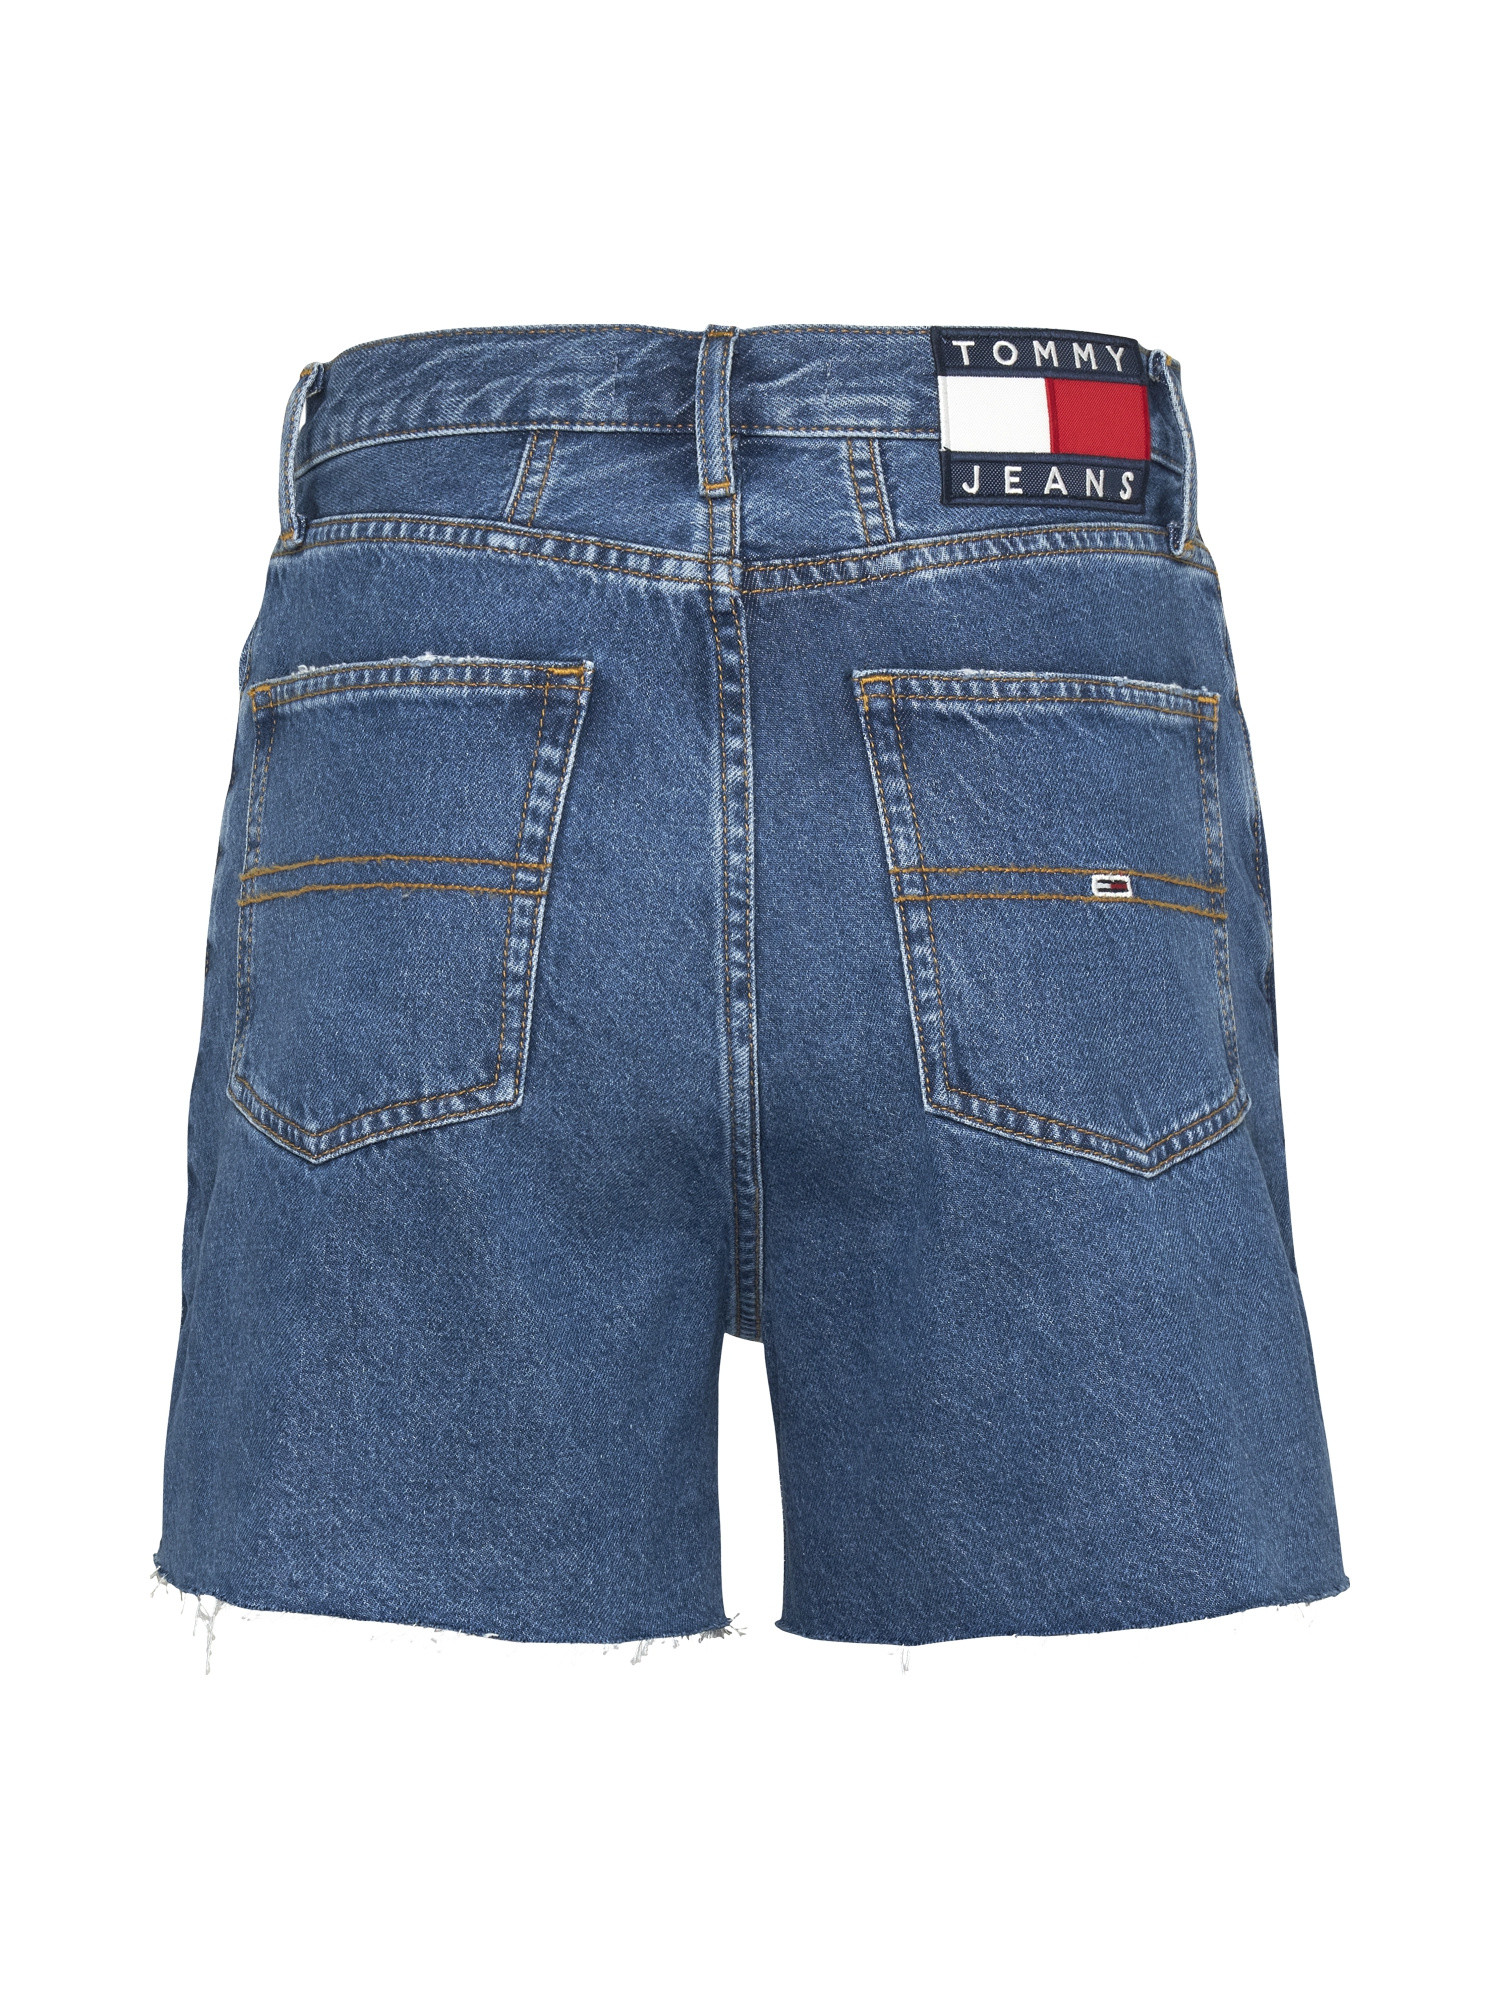 Tommy Jeans - Mom fit denim shorts, Denim, large image number 1